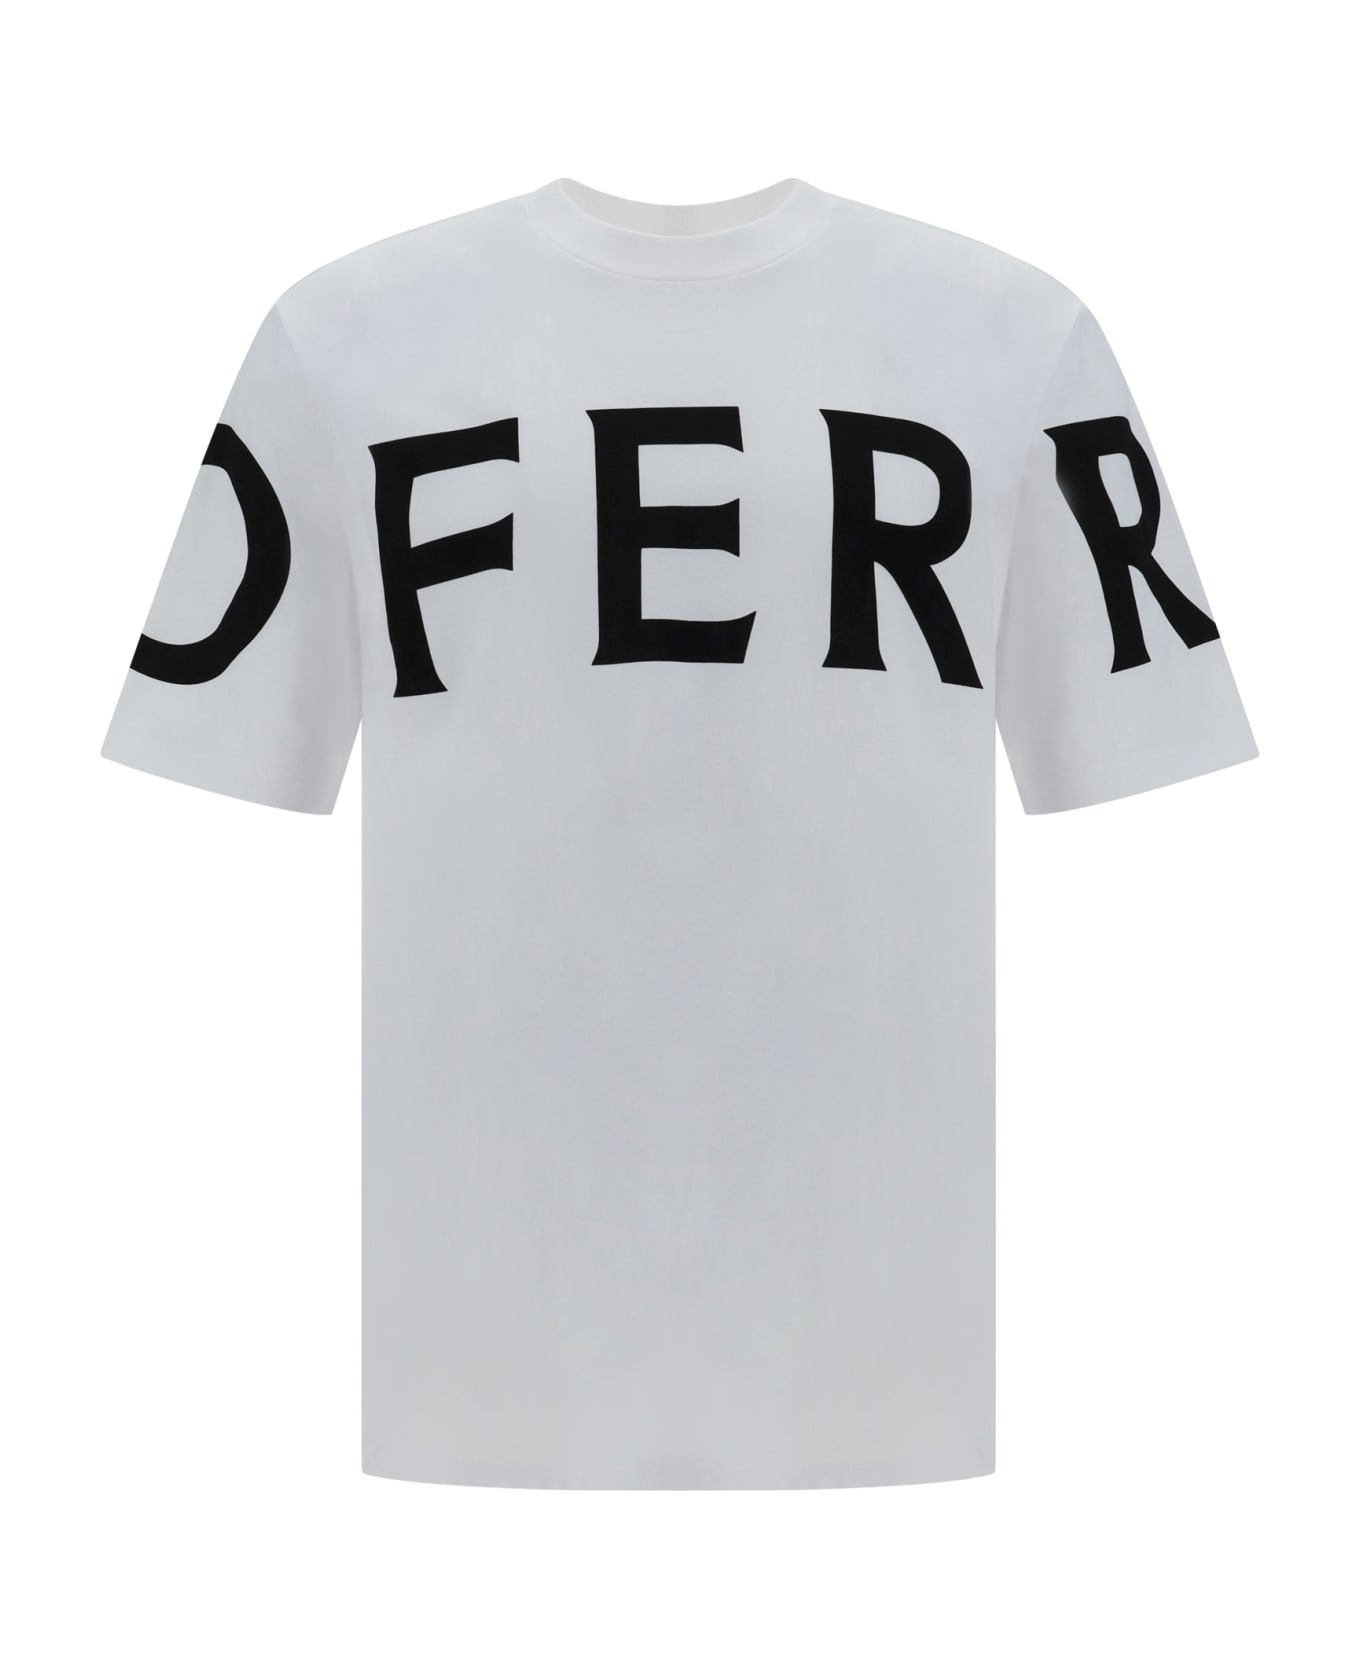 Ferragamo T-shirt - Black-white シャツ